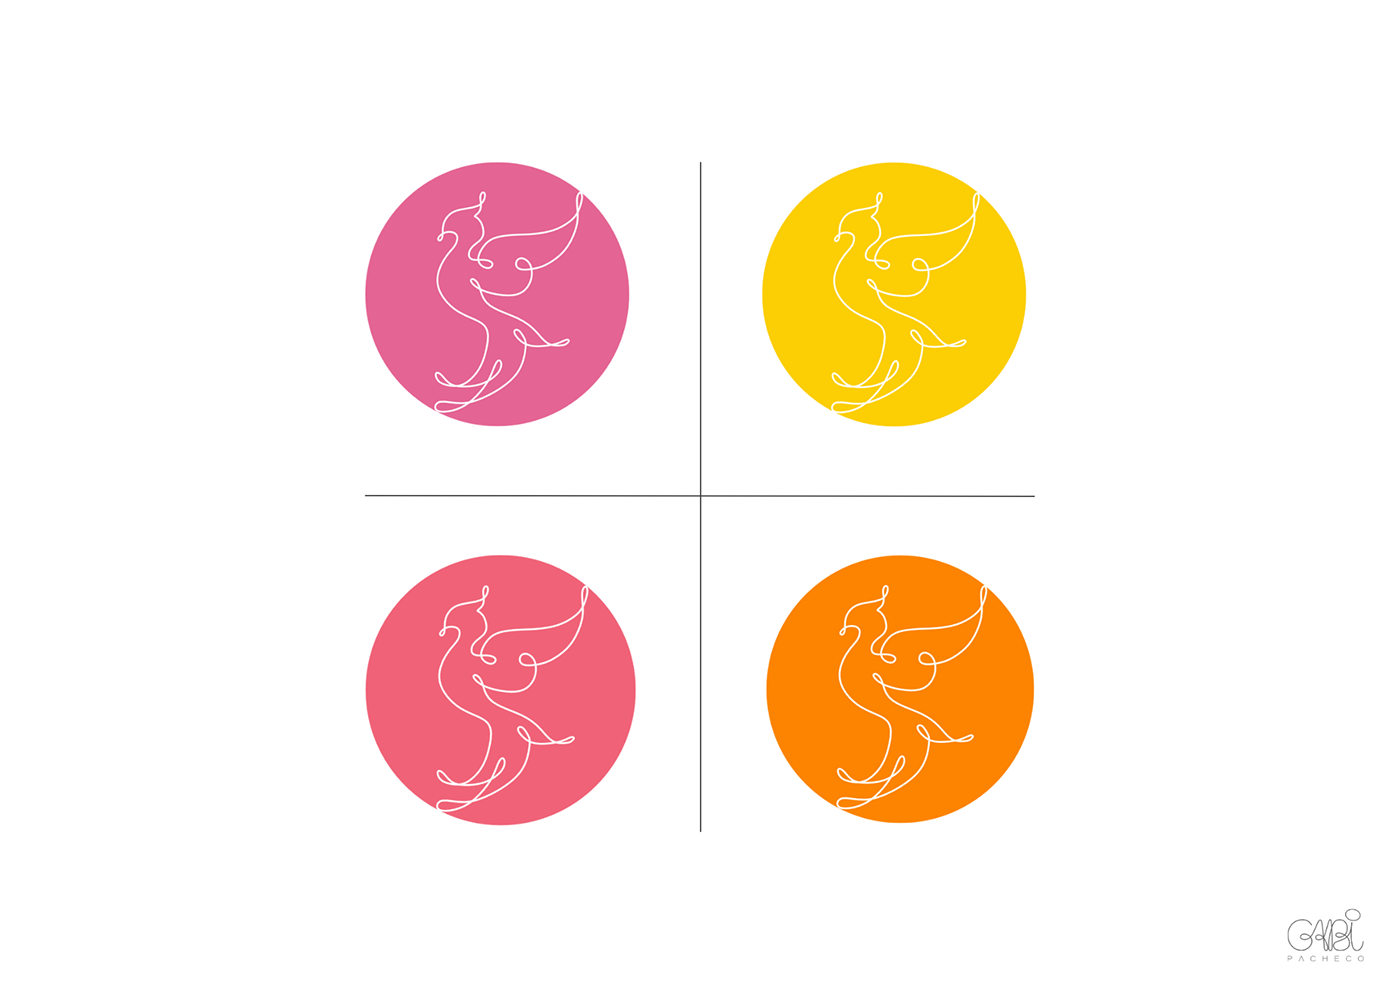 Oncologia cancer de mama mulheres logo Logotipo design identidade visual app cancer fenix